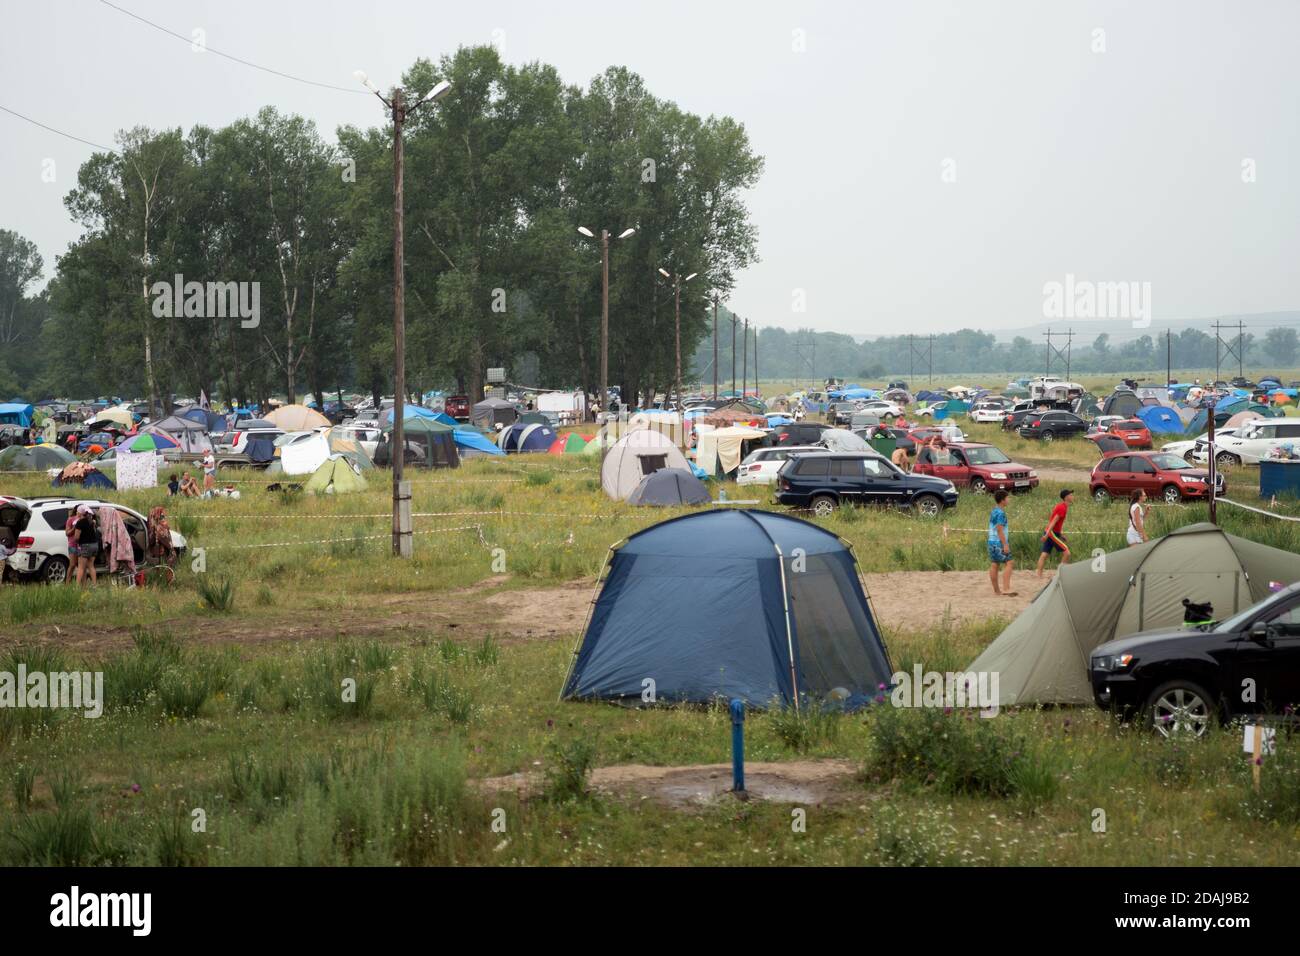 Camping-Zelt auf dem Campingplatz während des jährlichen Intl Festival für Musik und Handwerk "Welt von Sibirien" (FestMirSibiri) installiert. Stockfoto